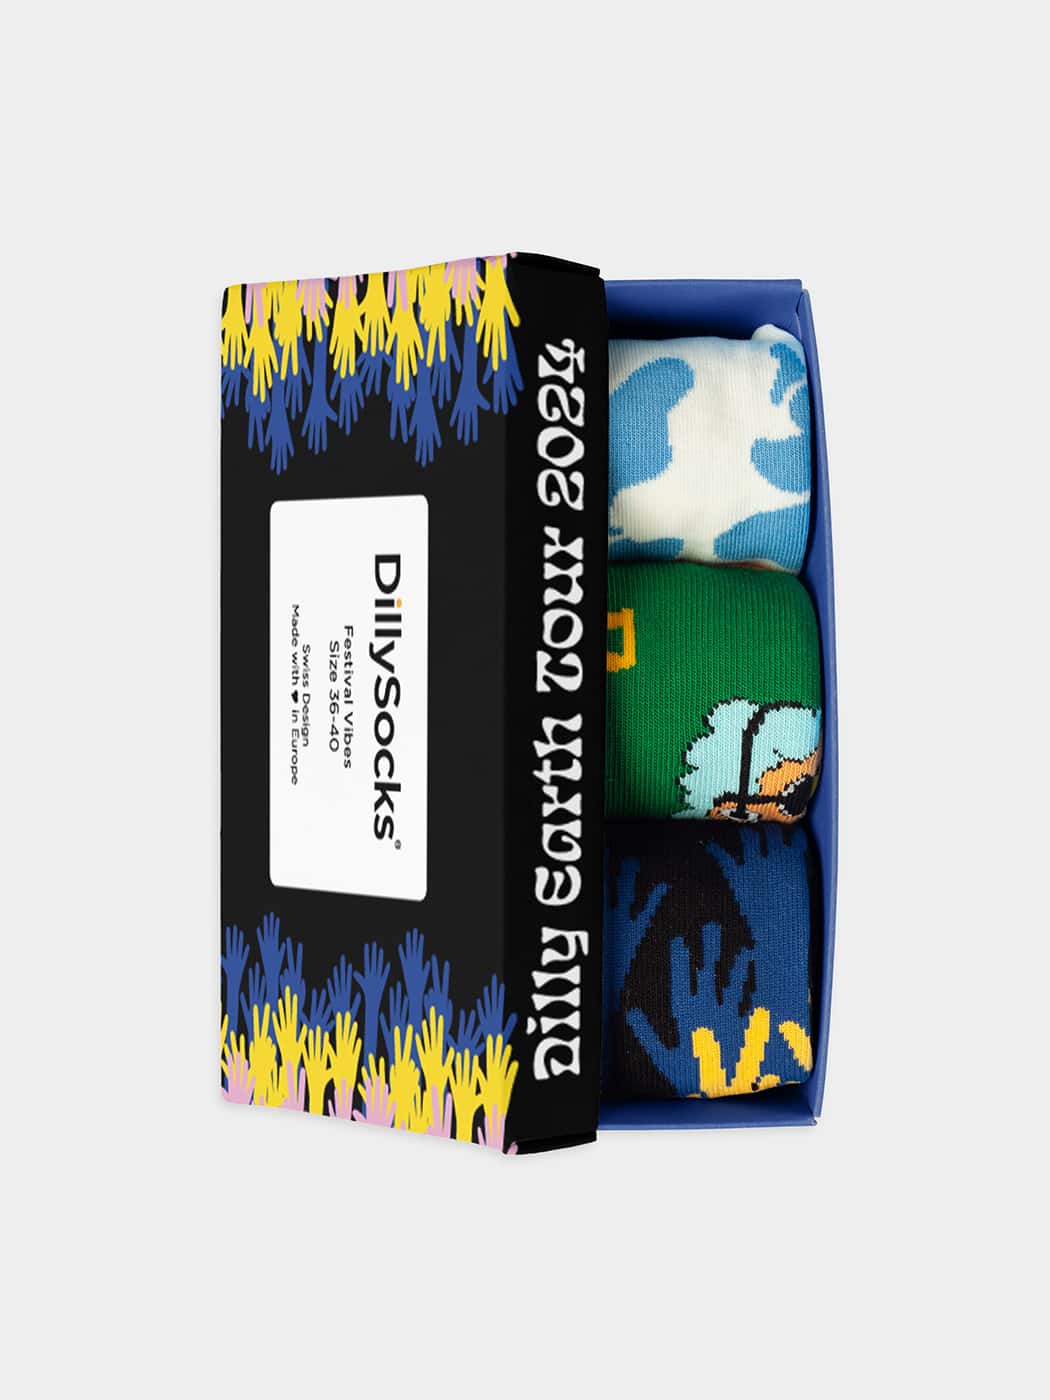 - Socken-Geschenkbox in Bunt mit Musik Motiv/Muster von DillySocks